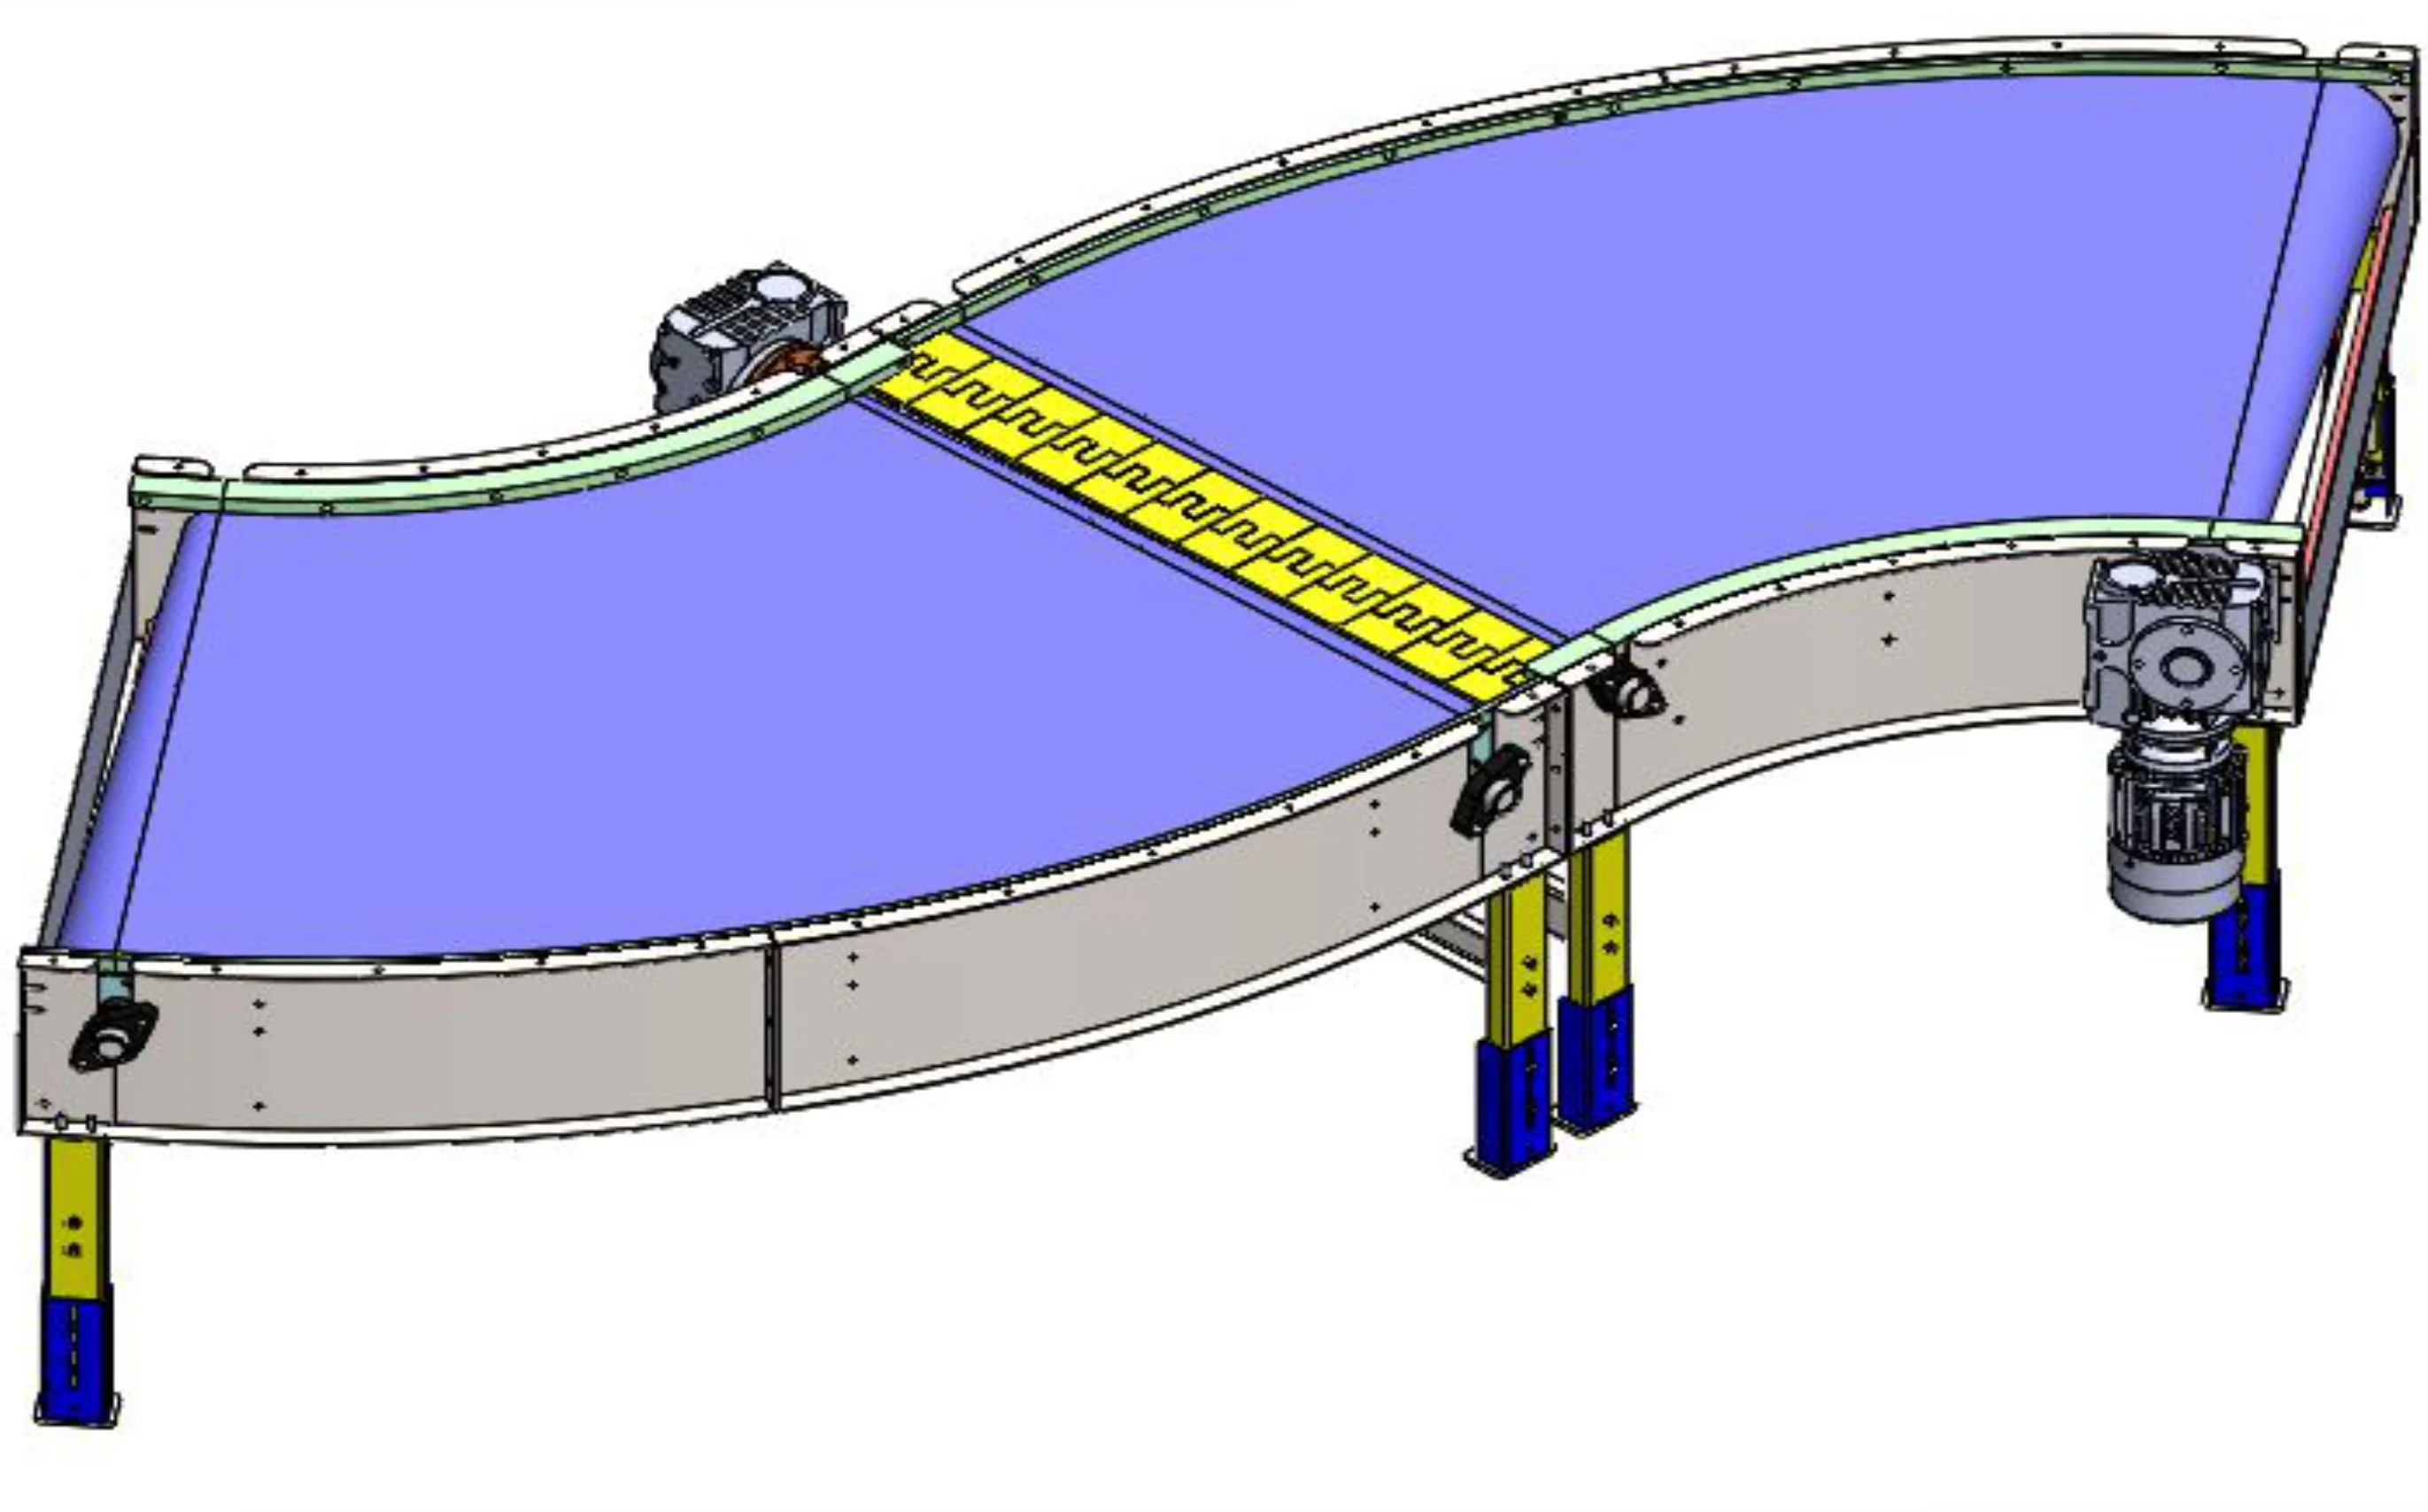 Modular Curve Conveyor